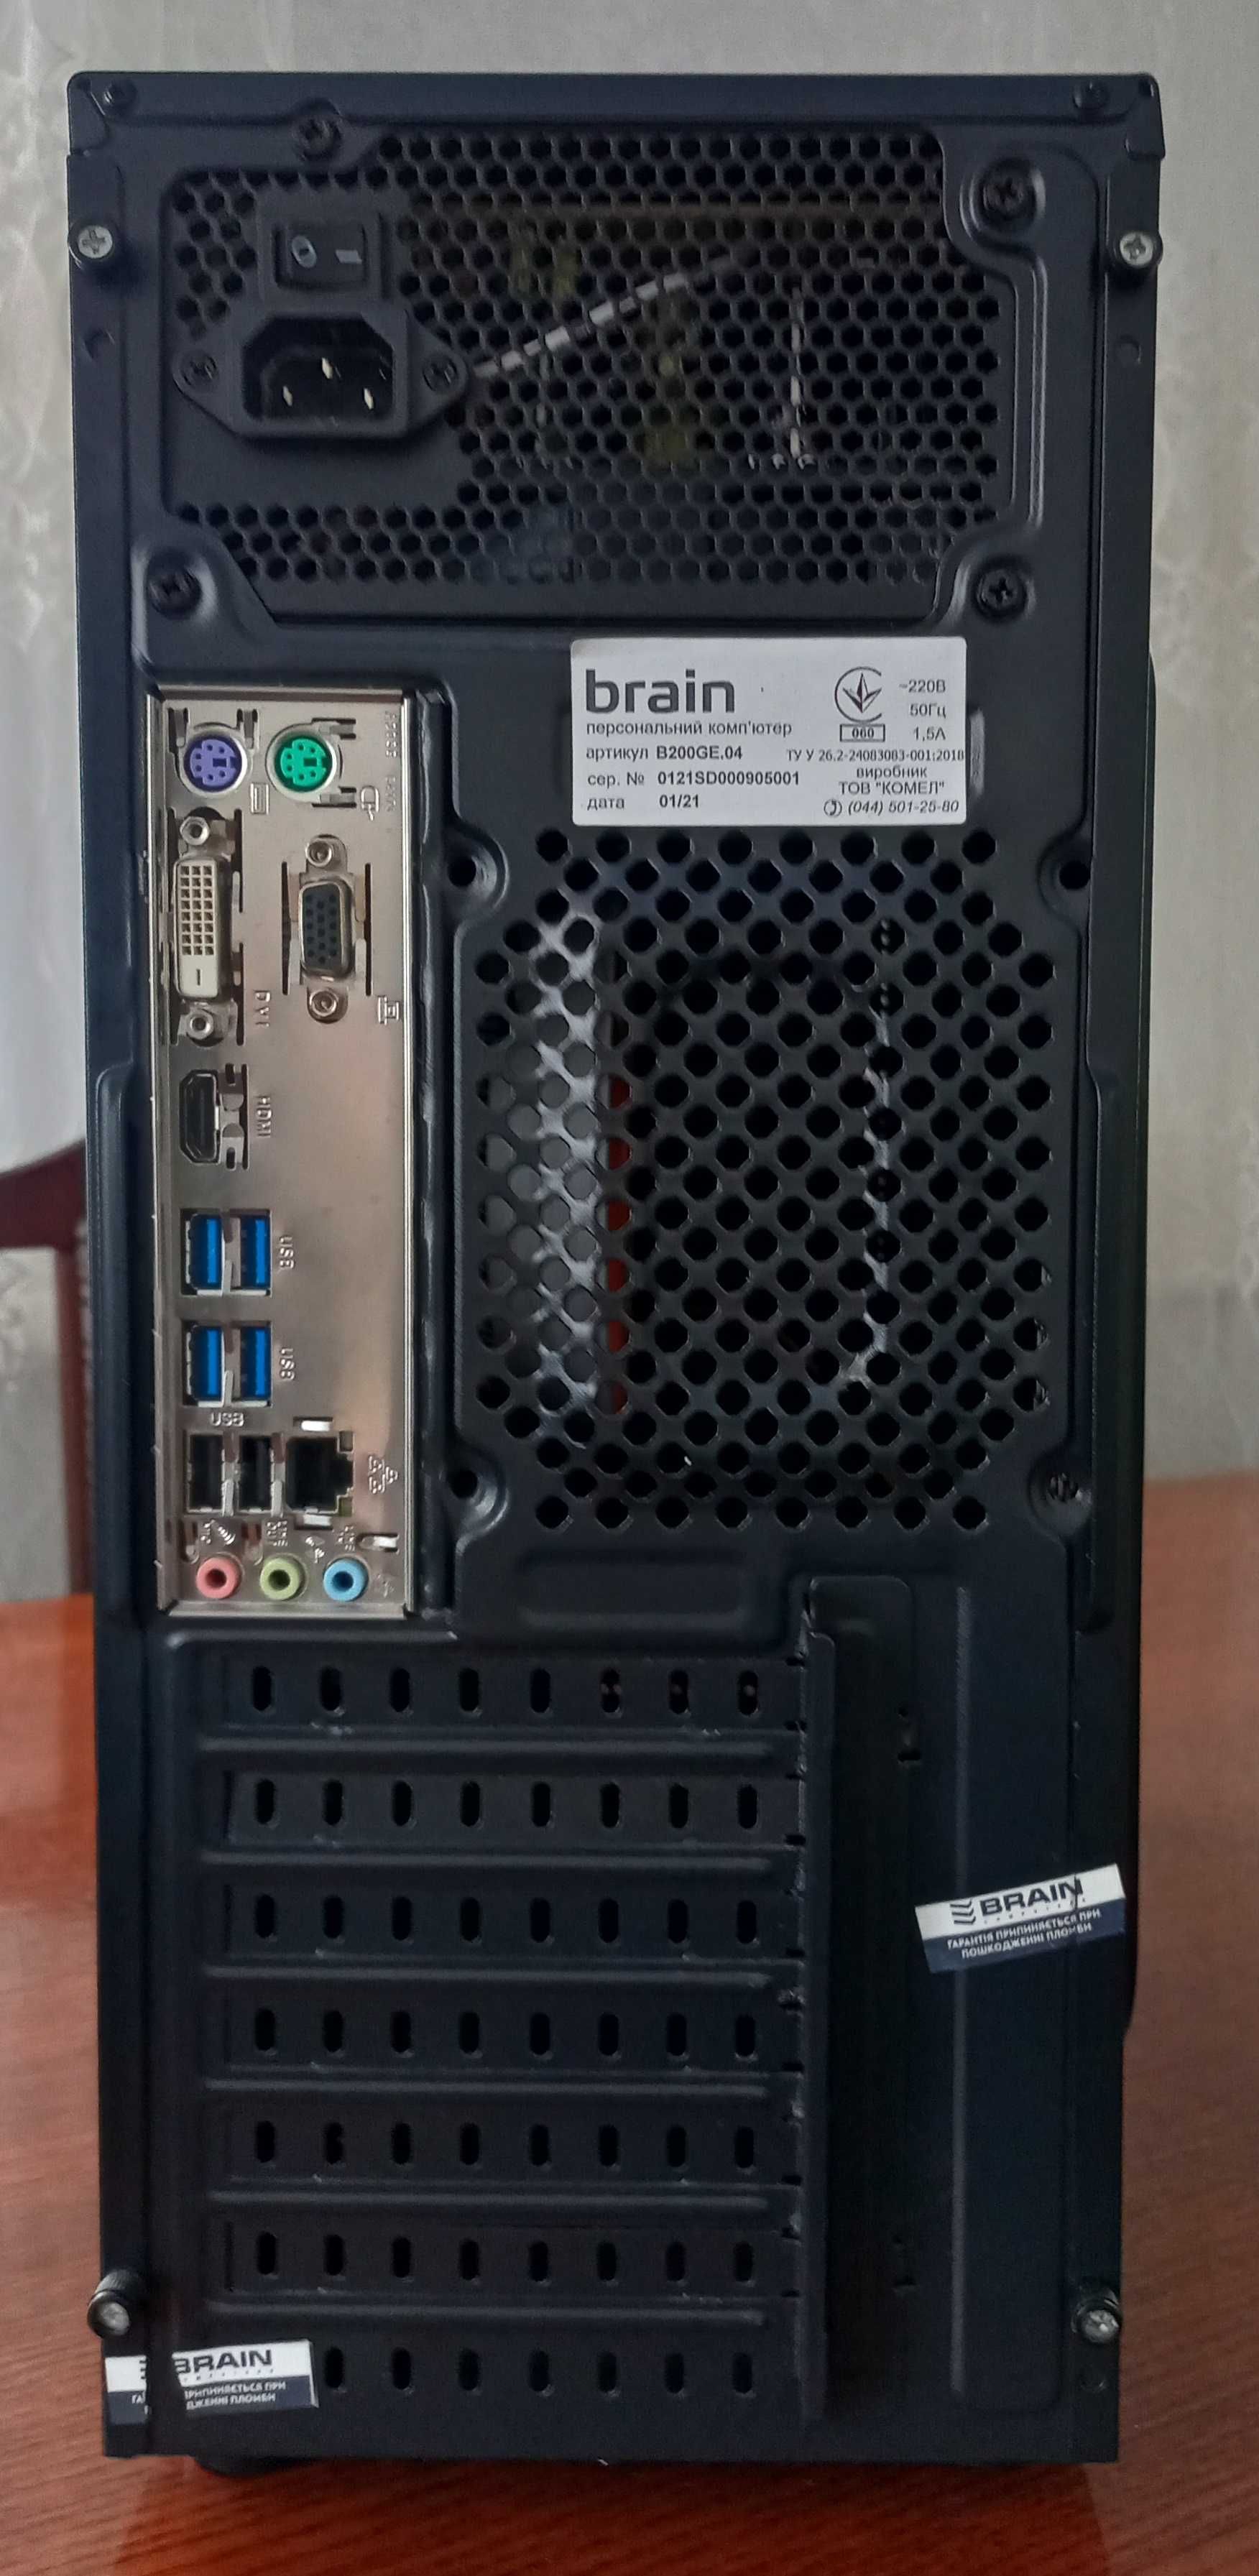 Brain 4*3.2. 8GB DDR4, 120GB SSD